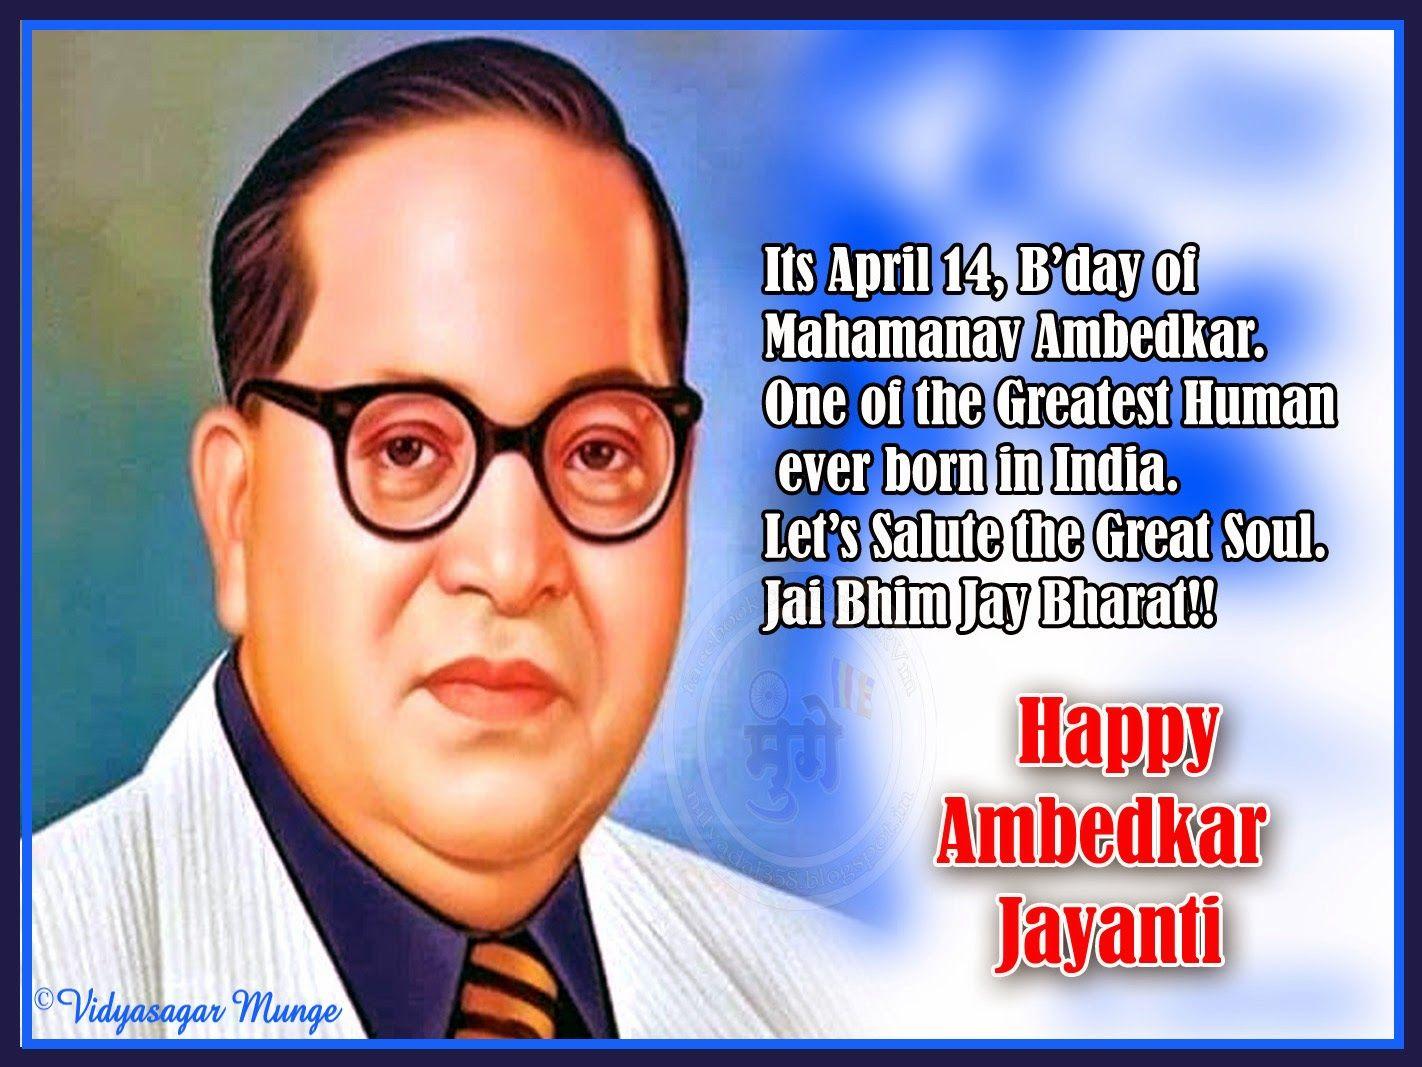 Happy Ambedkar Jayanti 2015 HD Wallpaper Bhim Jayanti 14 April